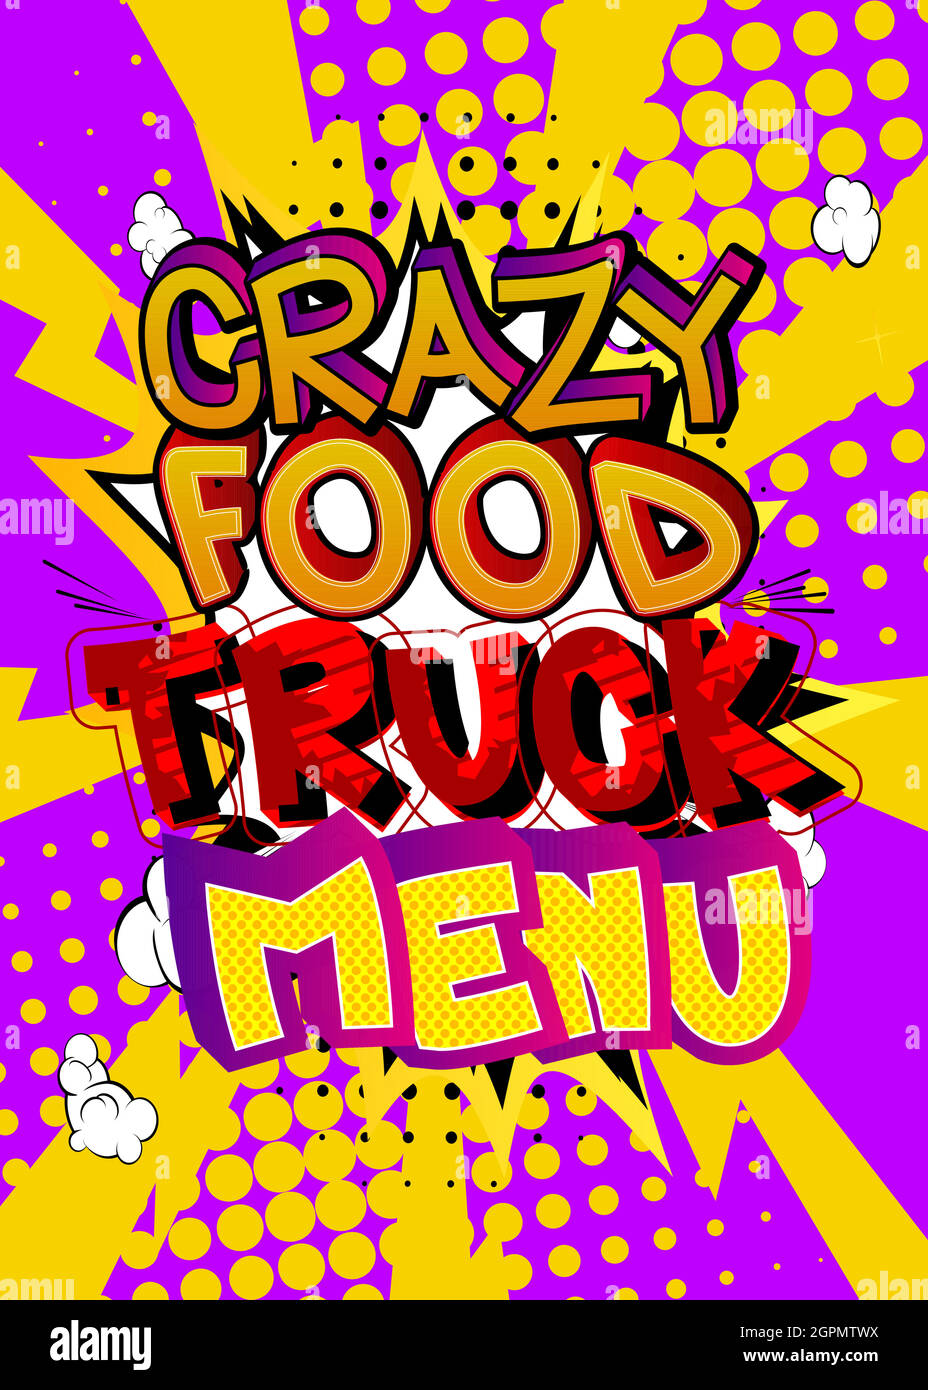 Crazy Food Truck Menu - testo in stile fumetto. Illustrazione Vettoriale